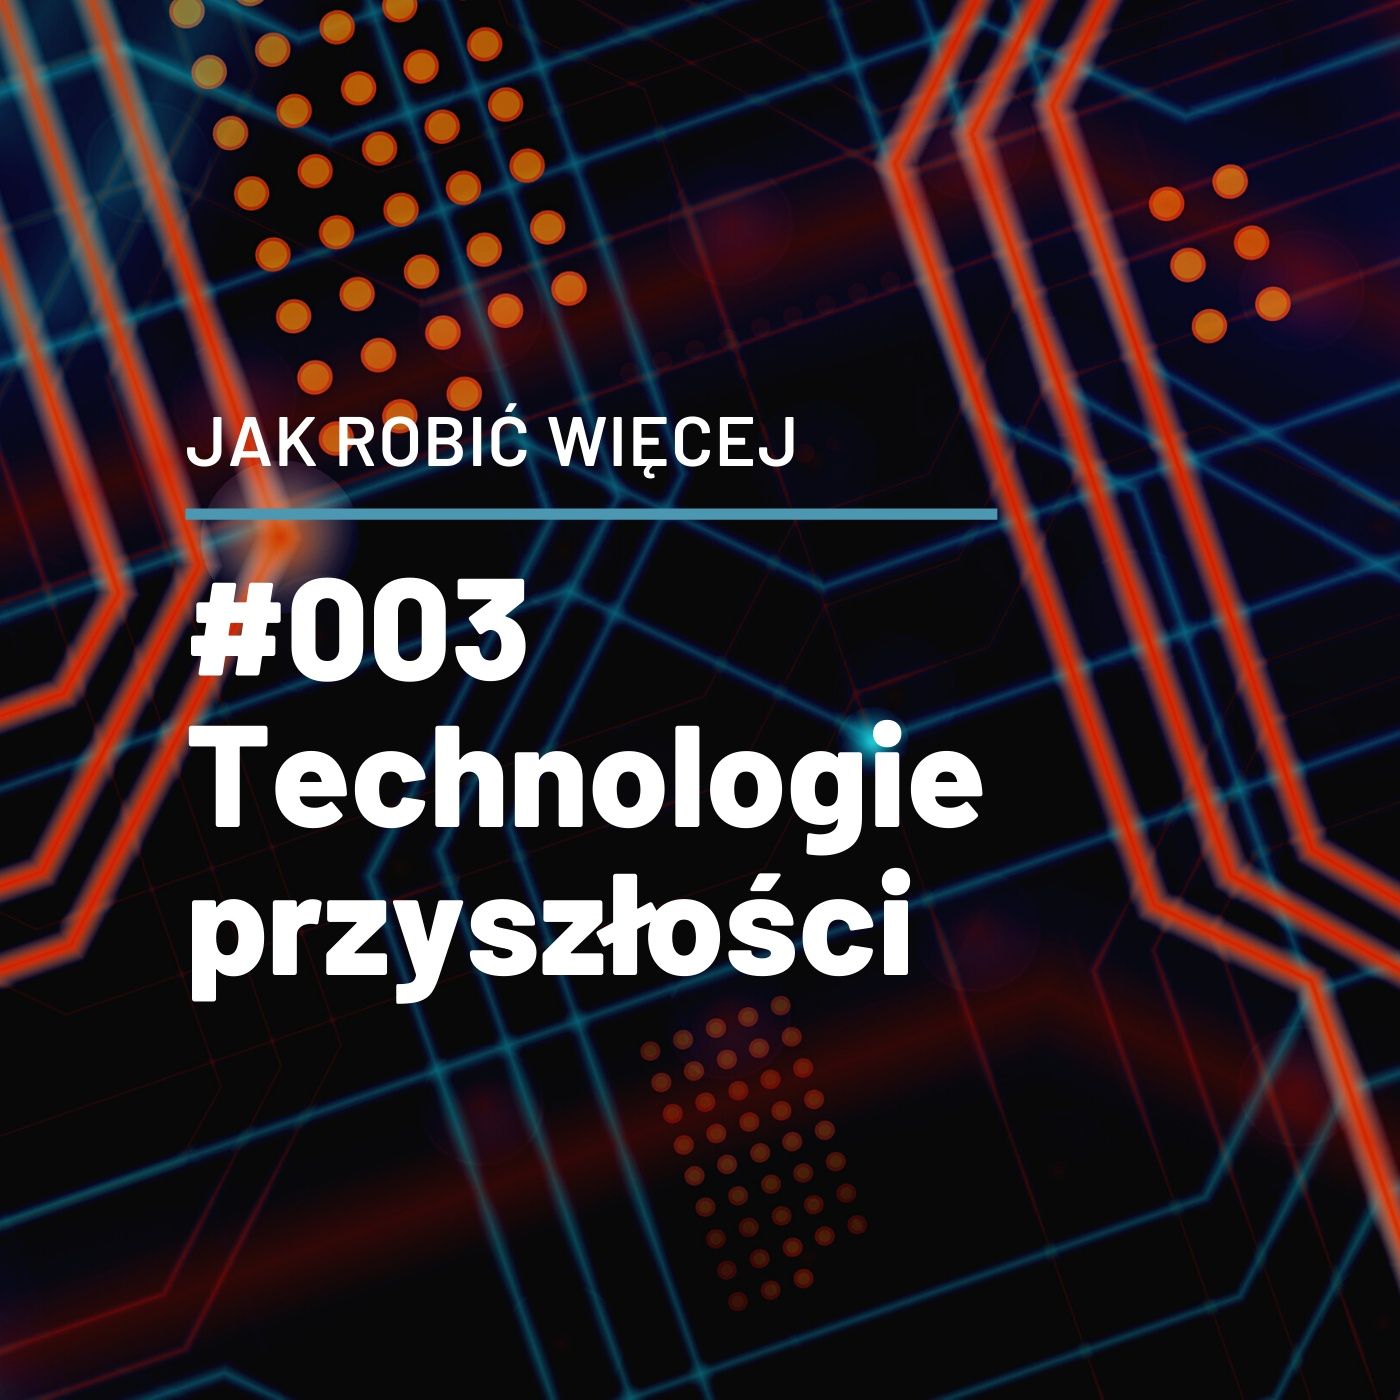 Jak Robić Więcej w technologiach przyszłości opowie Łukasz Kruszewski - JRW #003